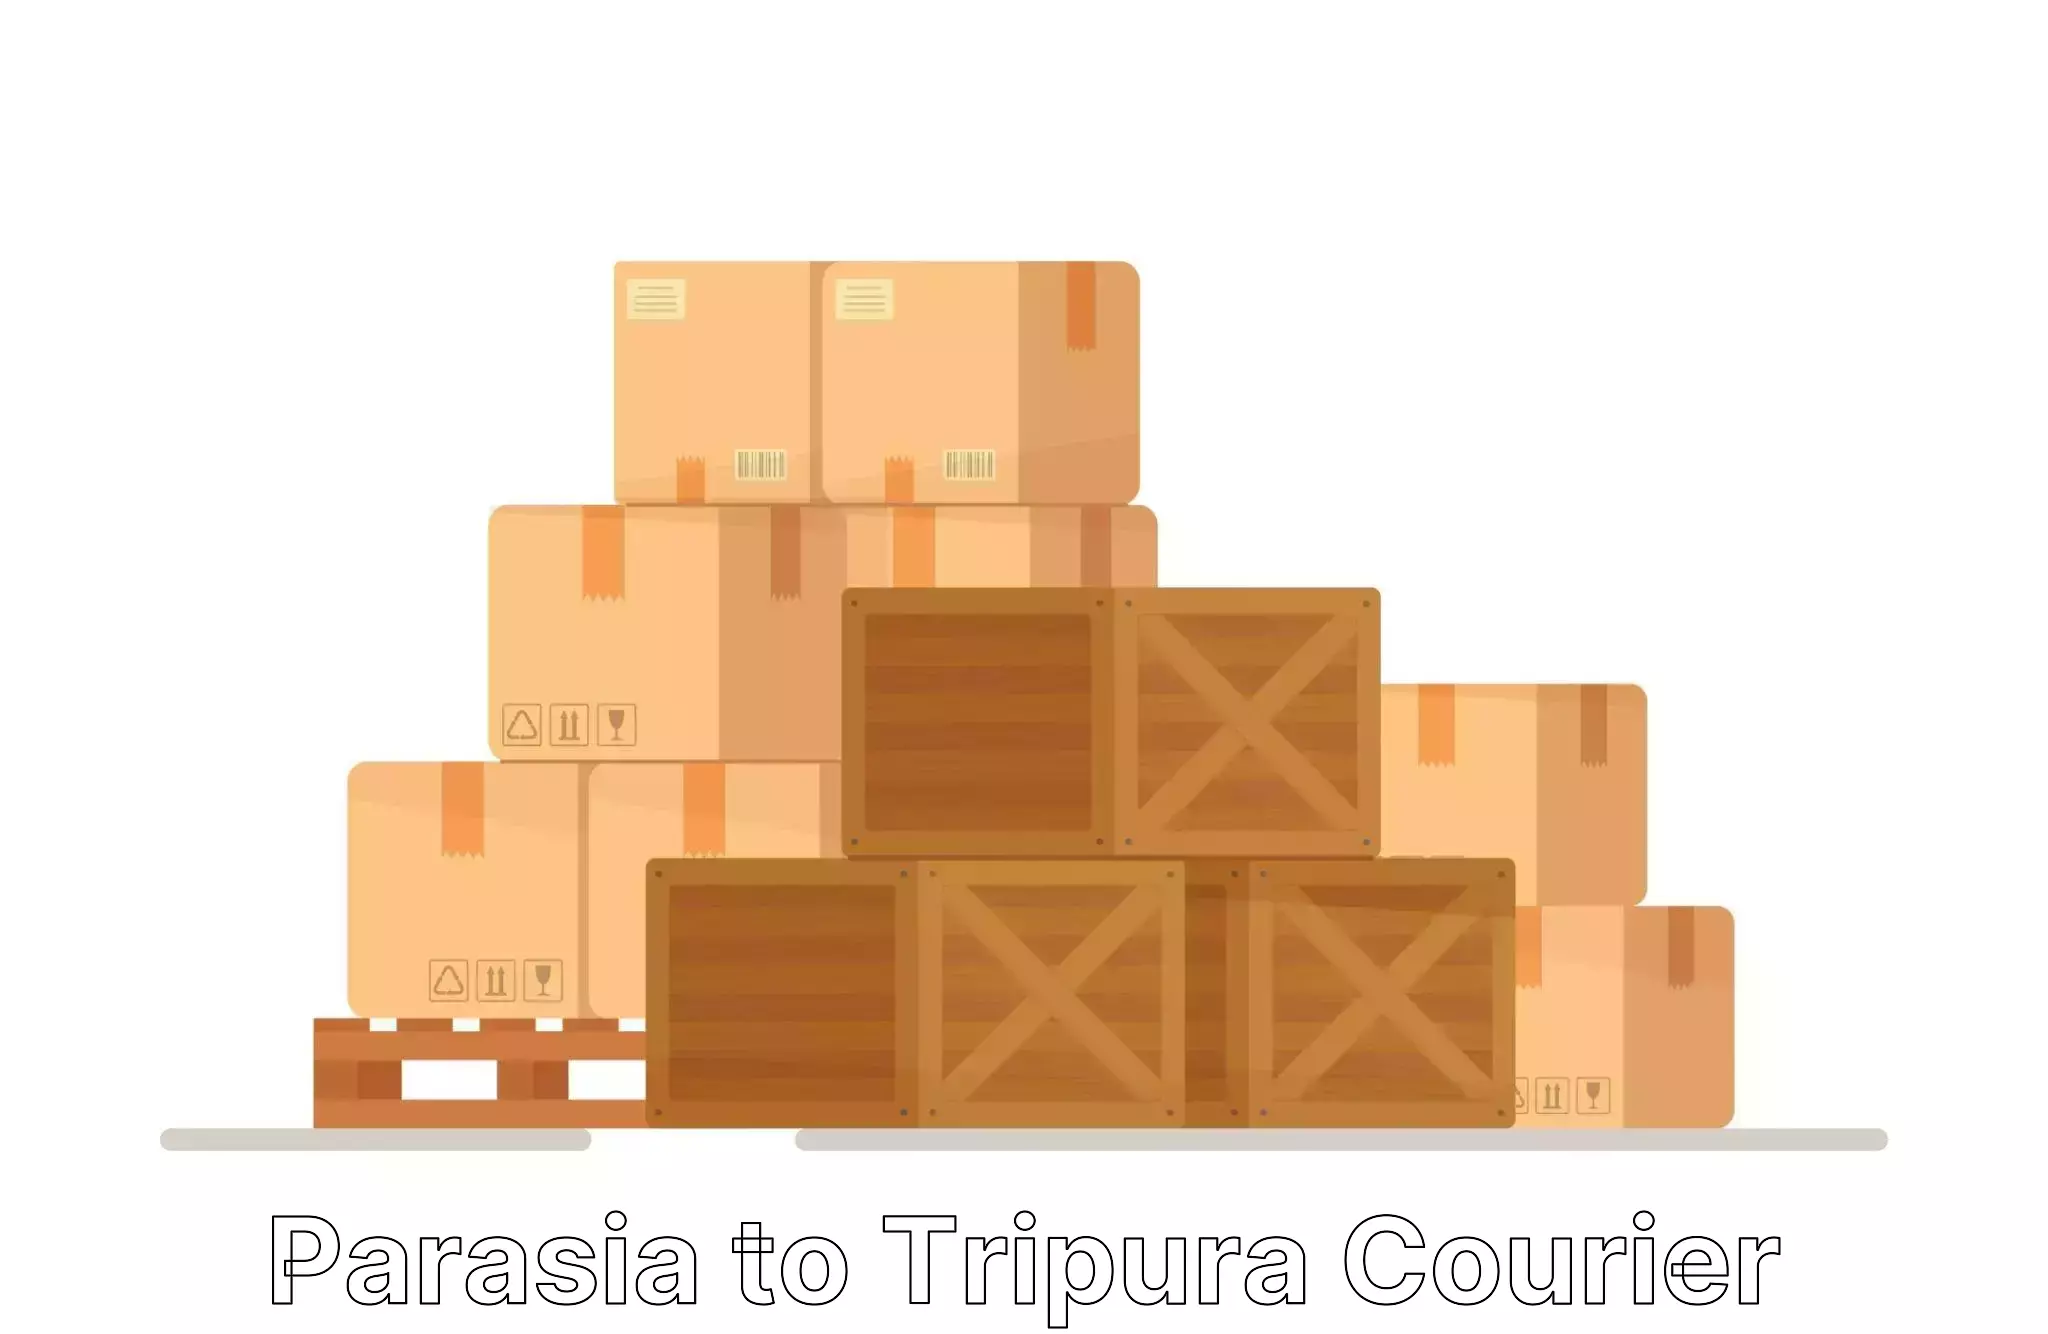 Furniture transport and logistics Parasia to Manughat